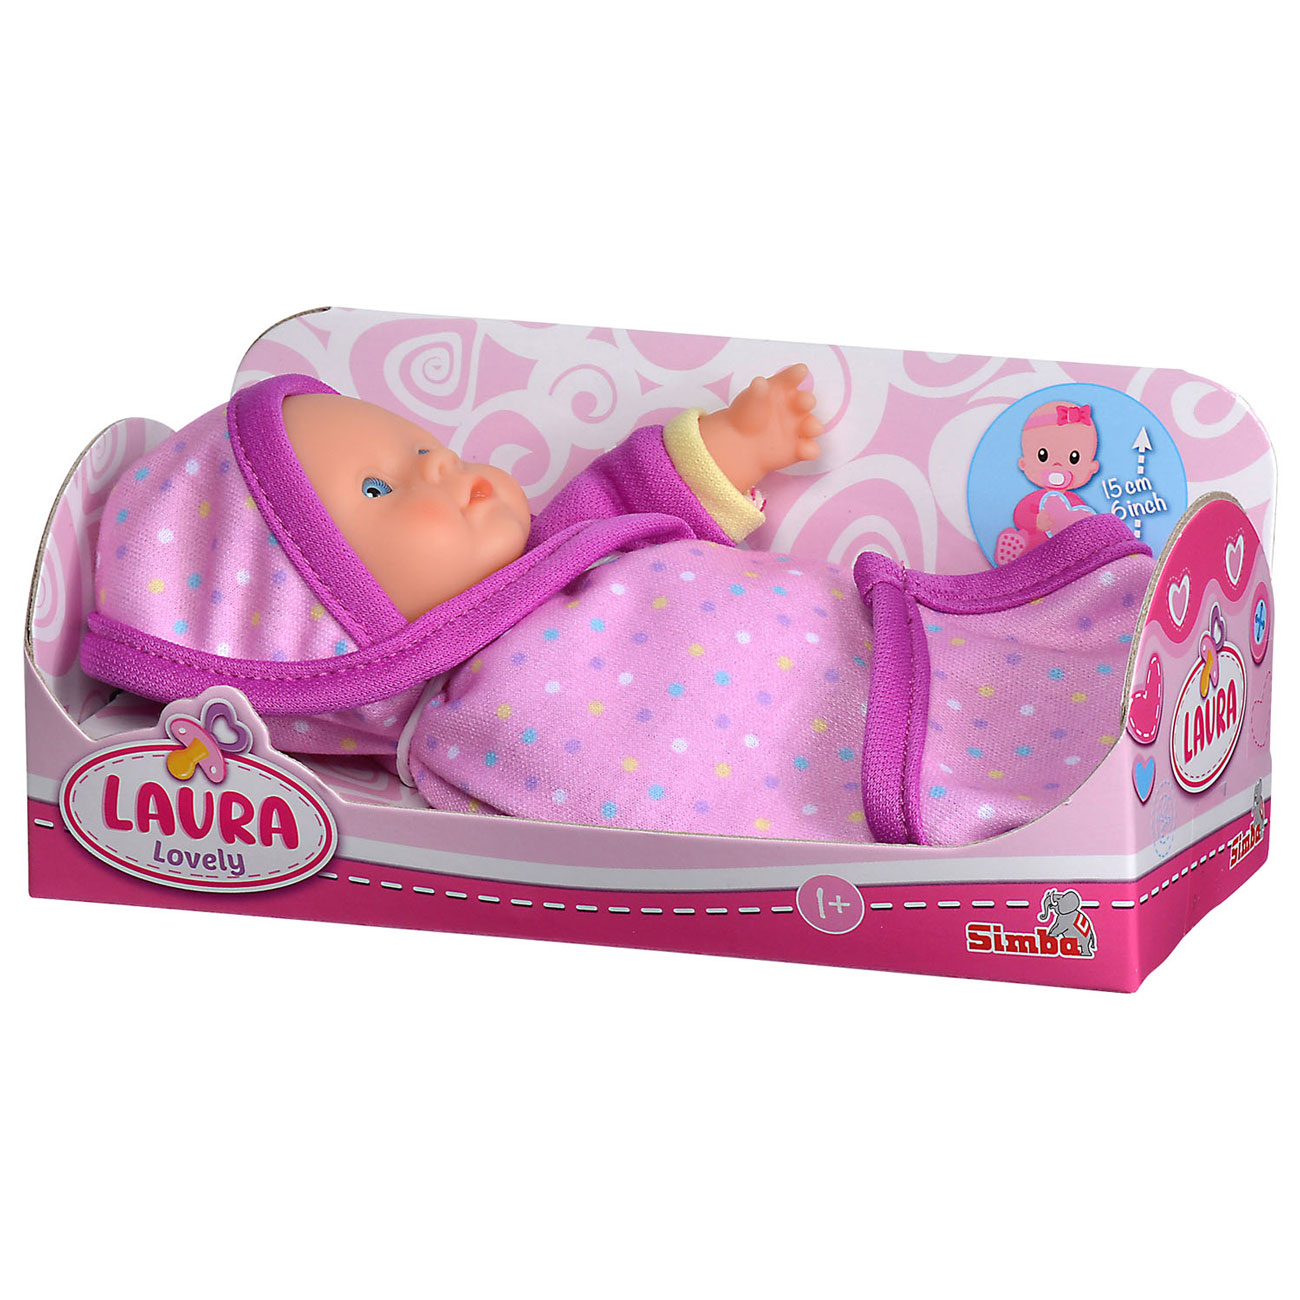 Babypuppe Laura Lovely mit Decke